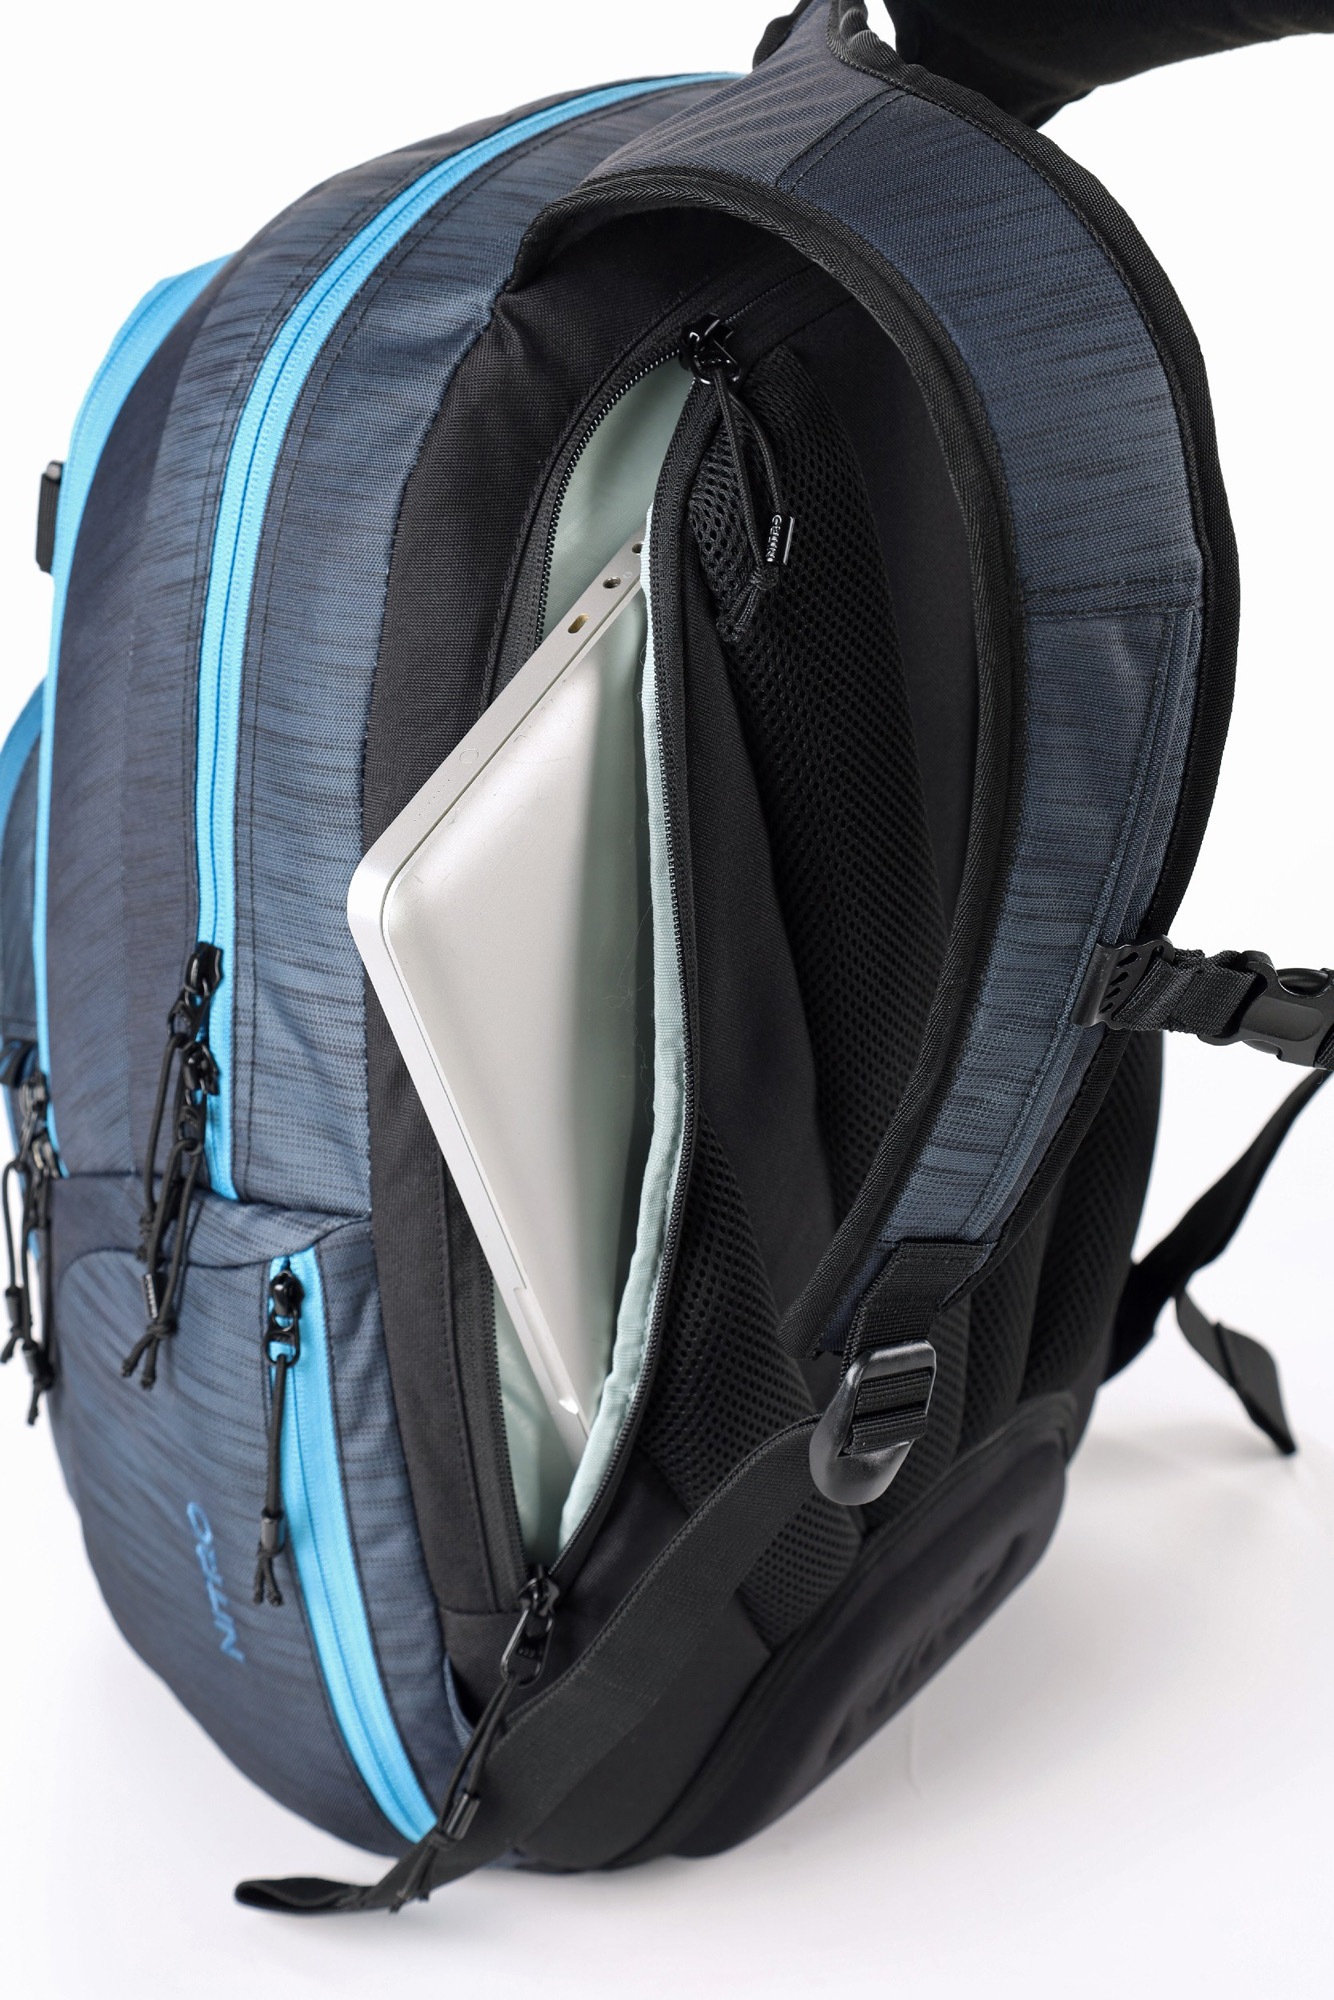 NITRO Schulrucksack »STASH 29, haze«, Reisetasche, Travel Bag, Alltagsrucksack, Daypack, Schoolbag